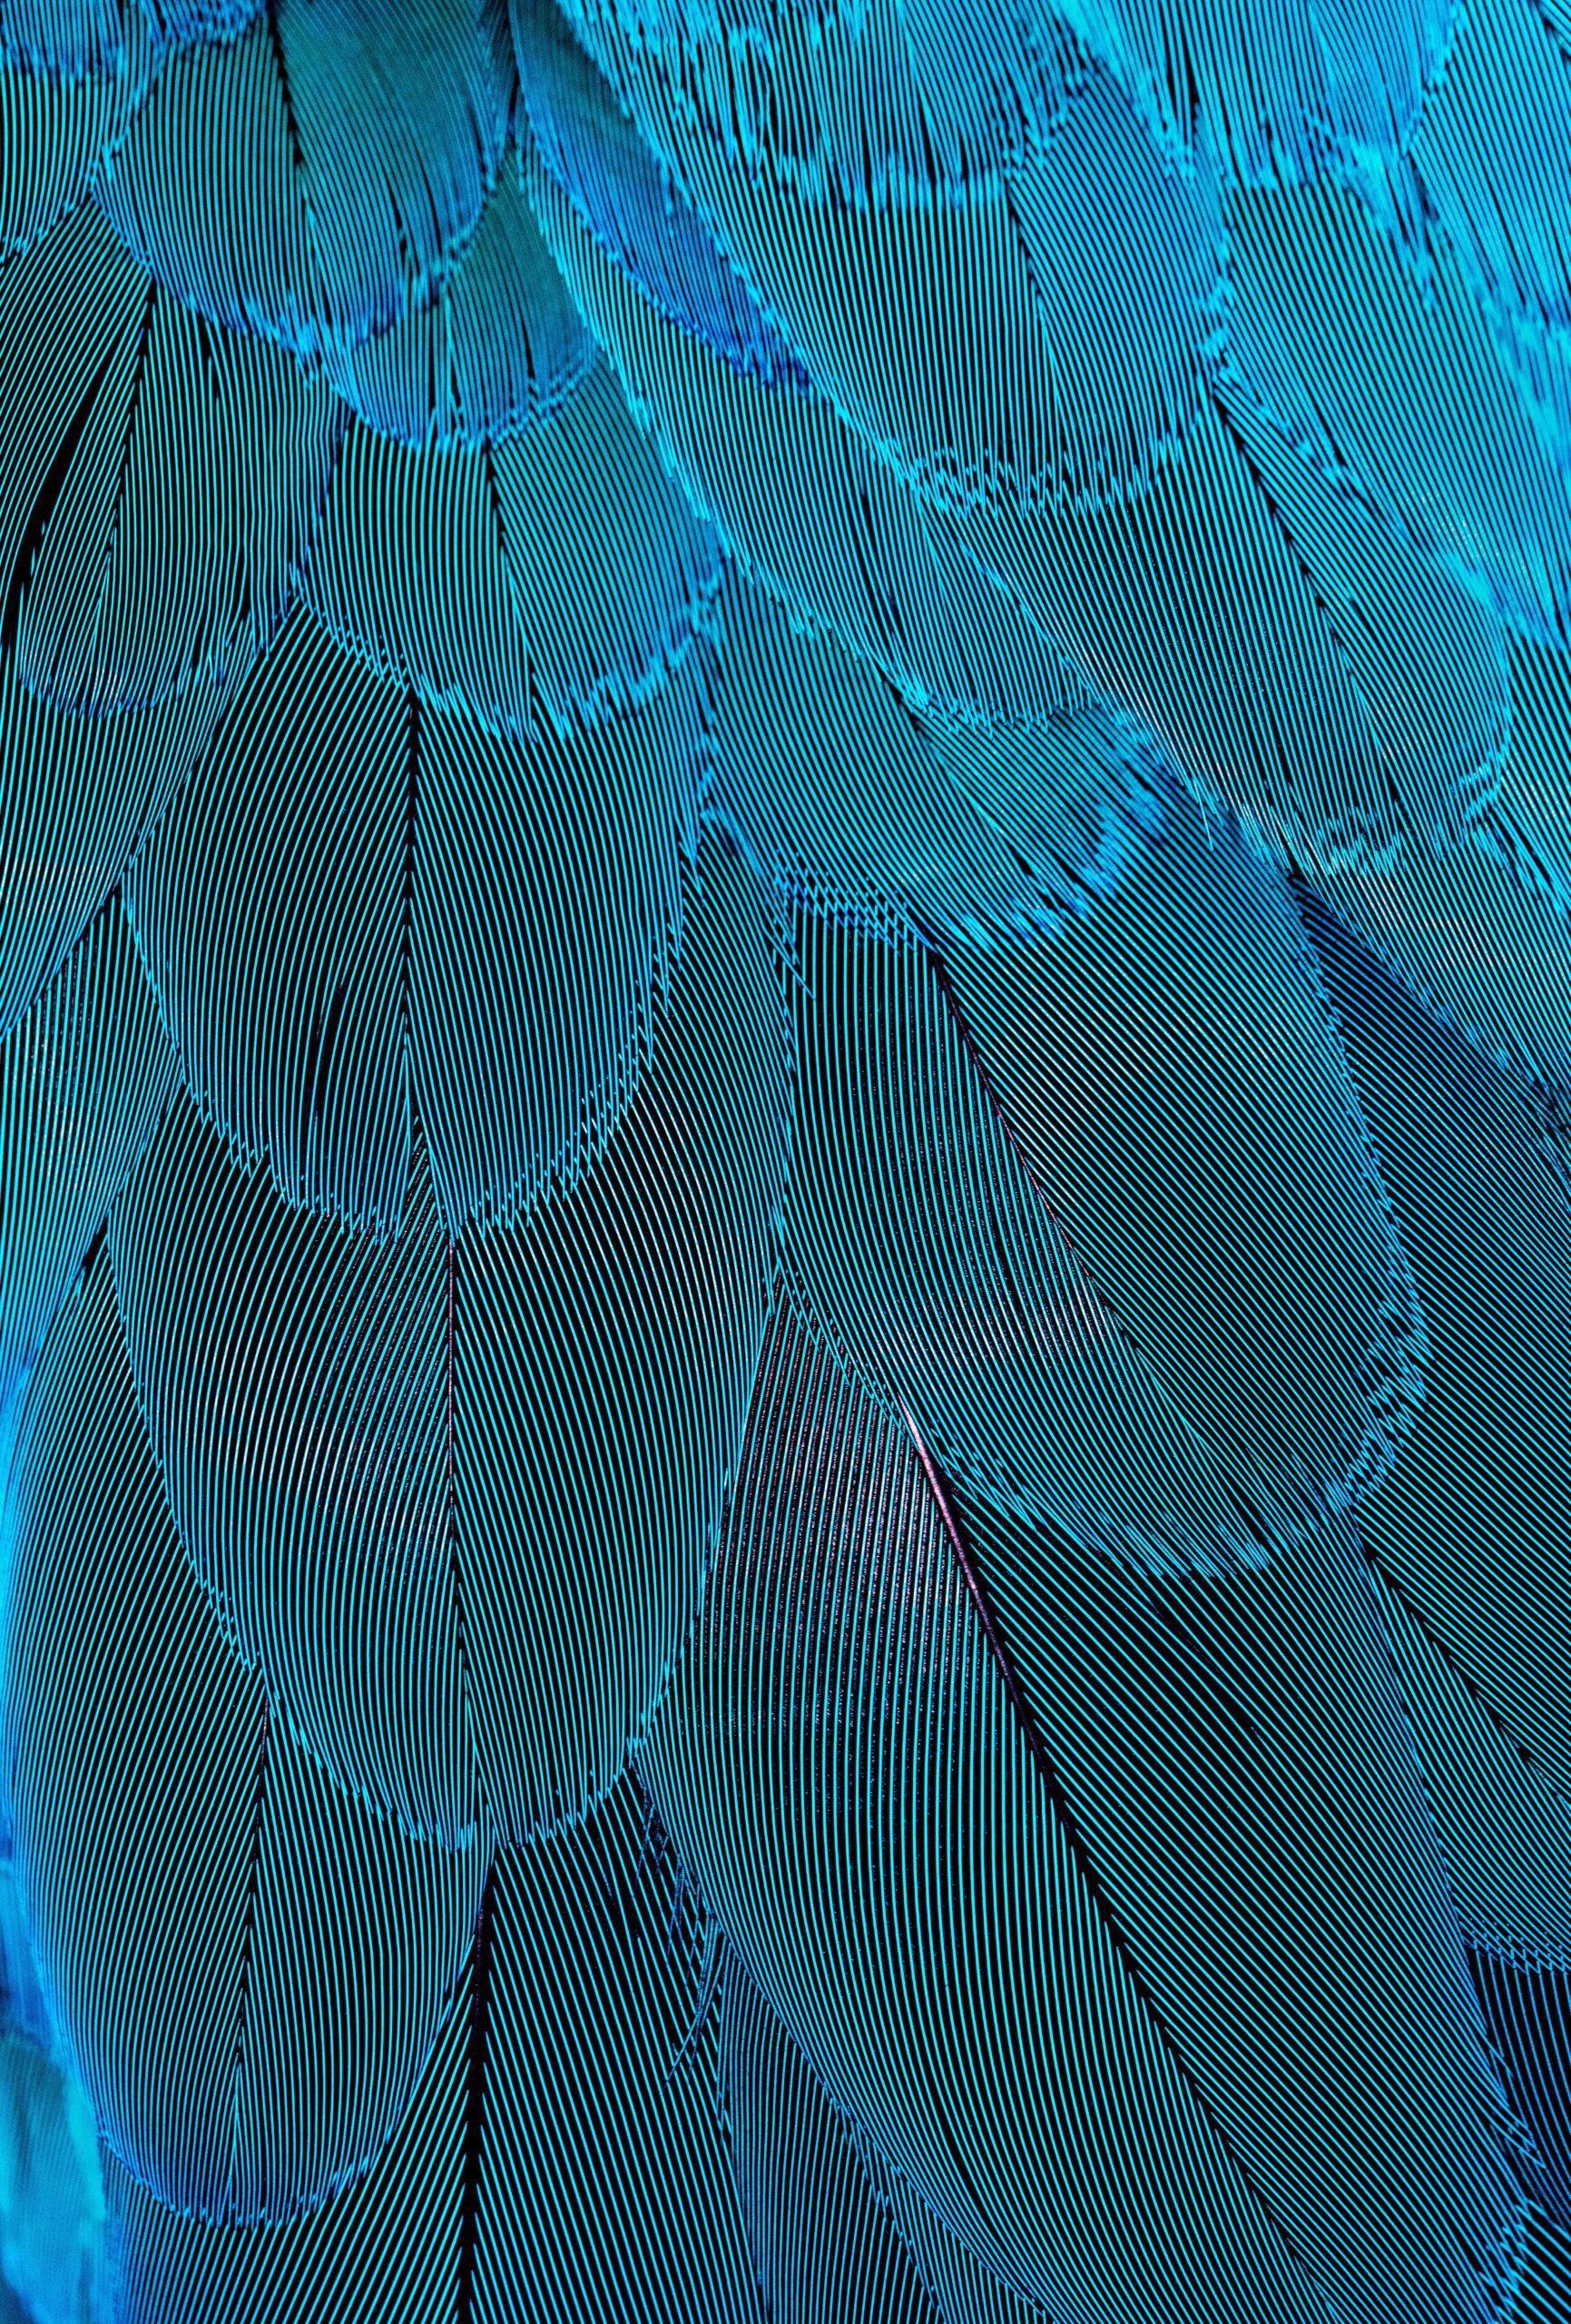 david-clode-background feathered image-unsplash